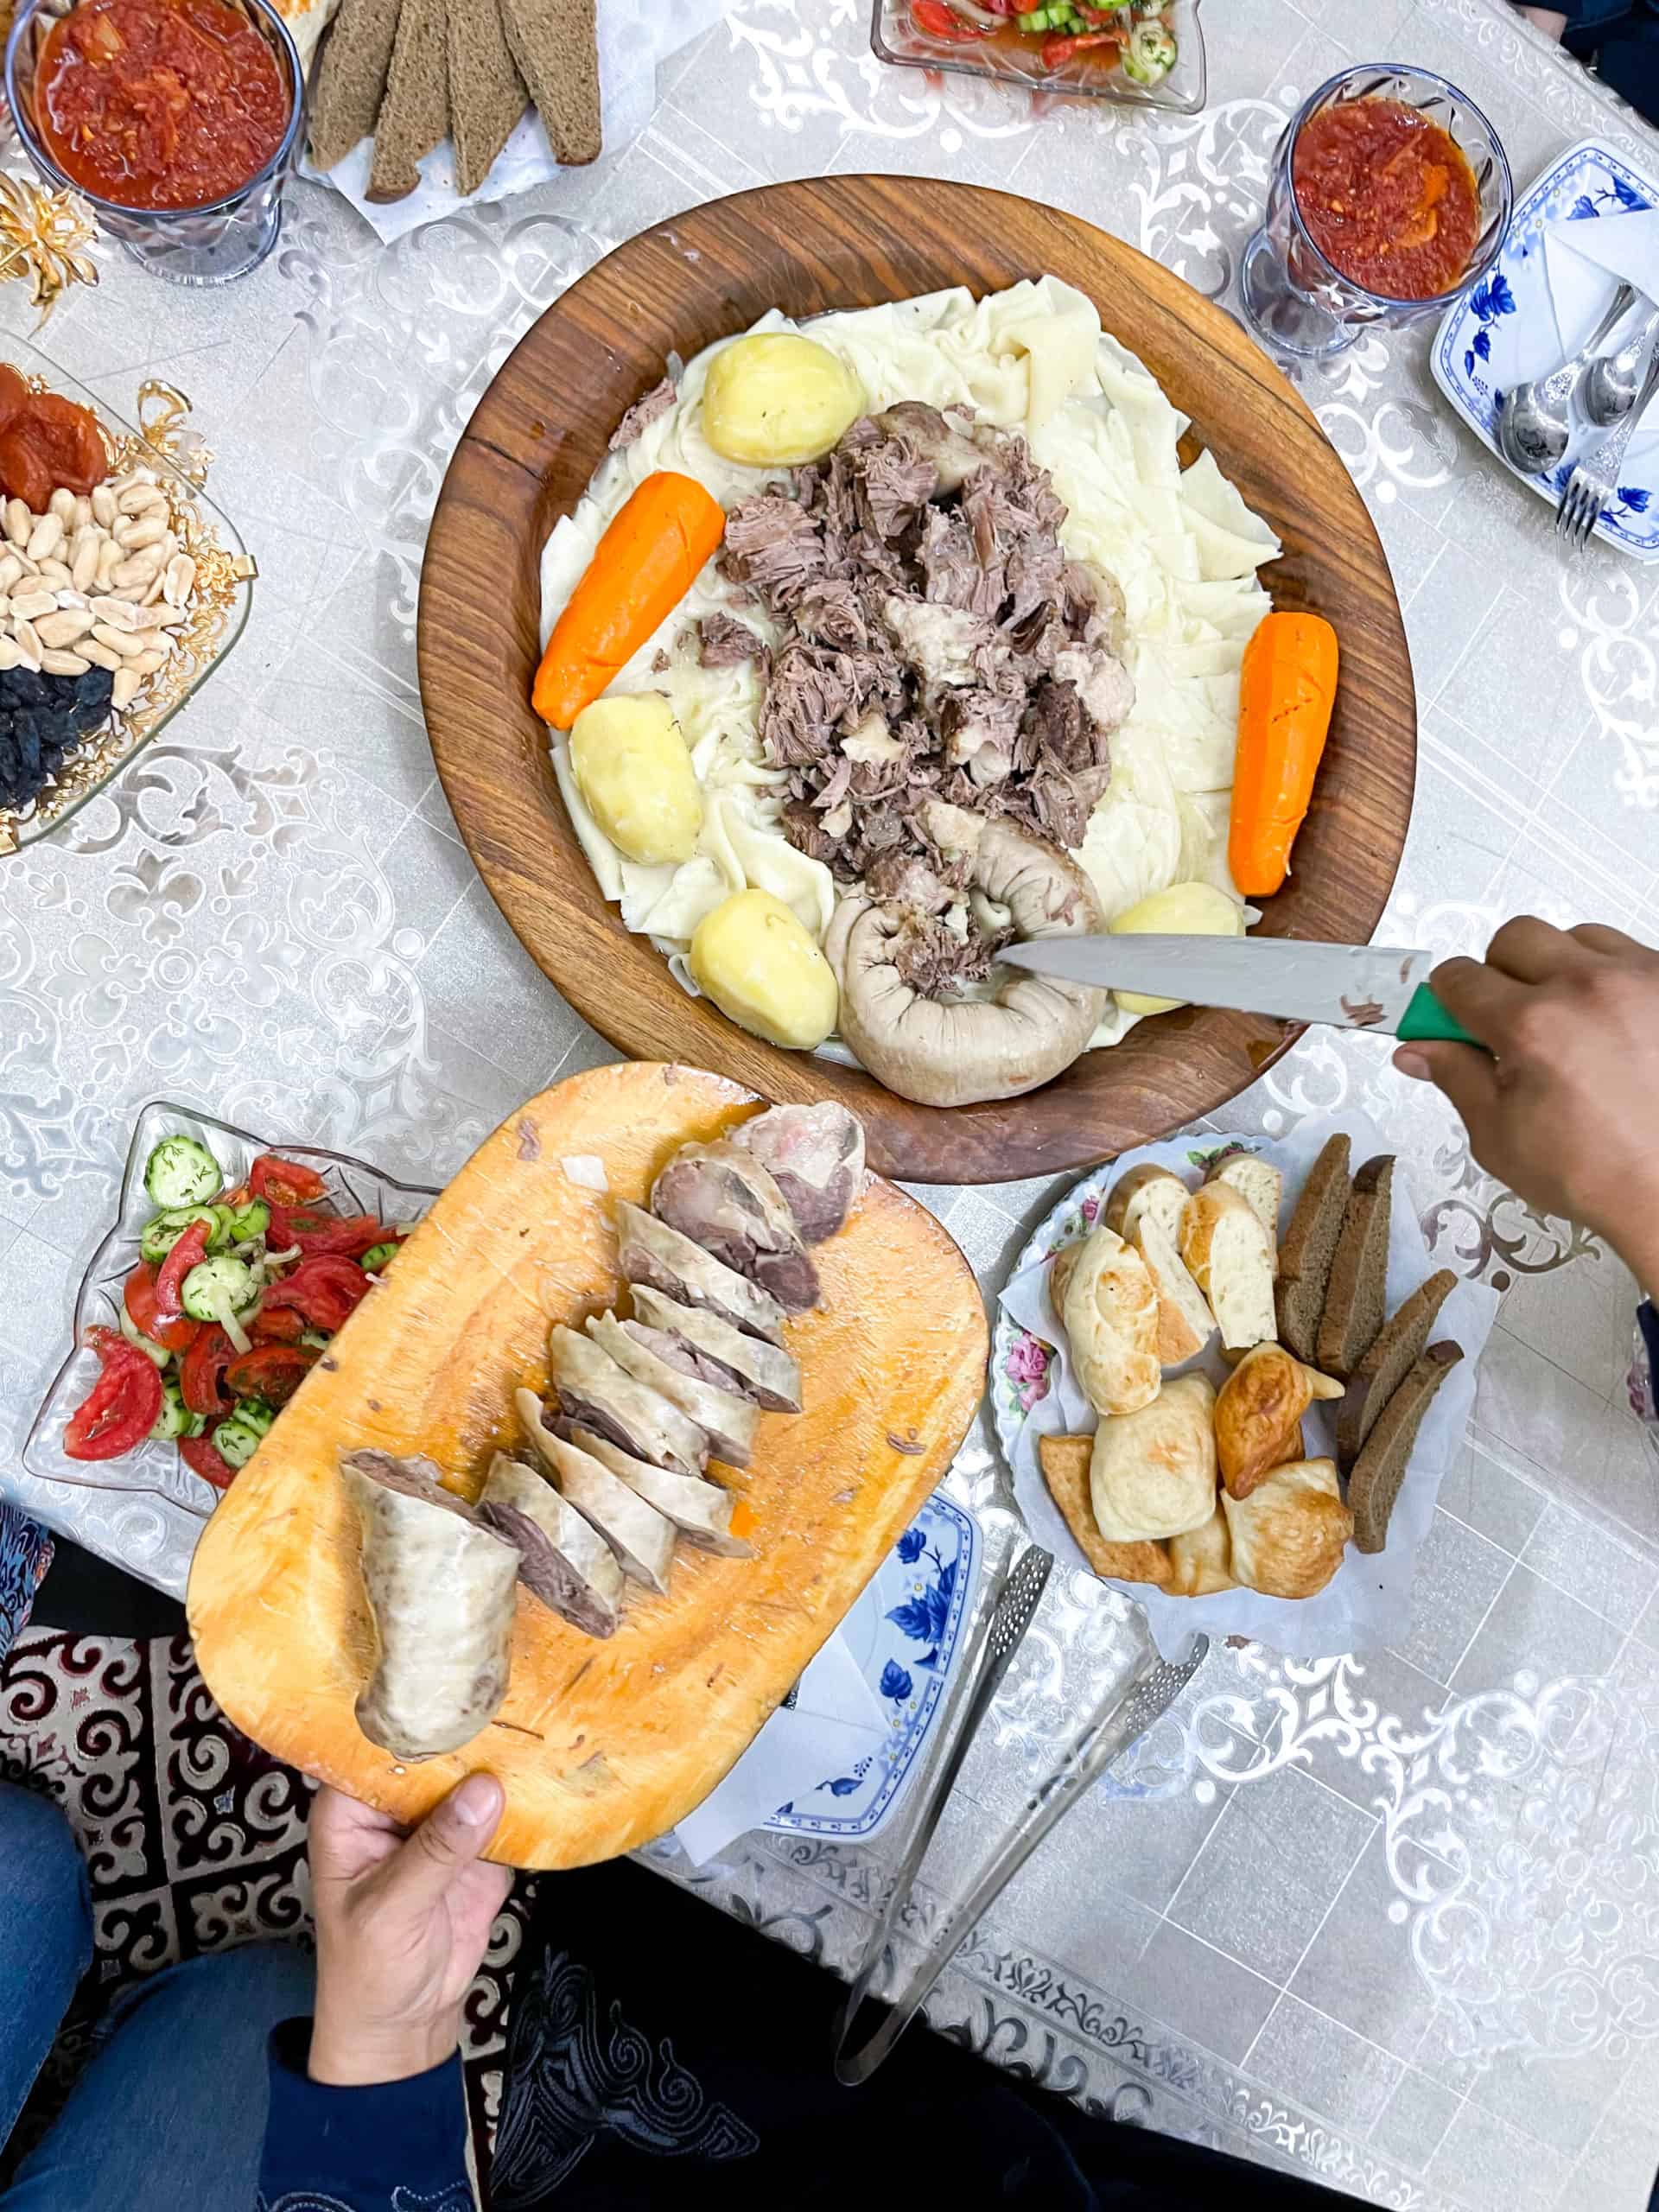 Kazakhstan - Turkistan - Beshbarmak sausage being sliced